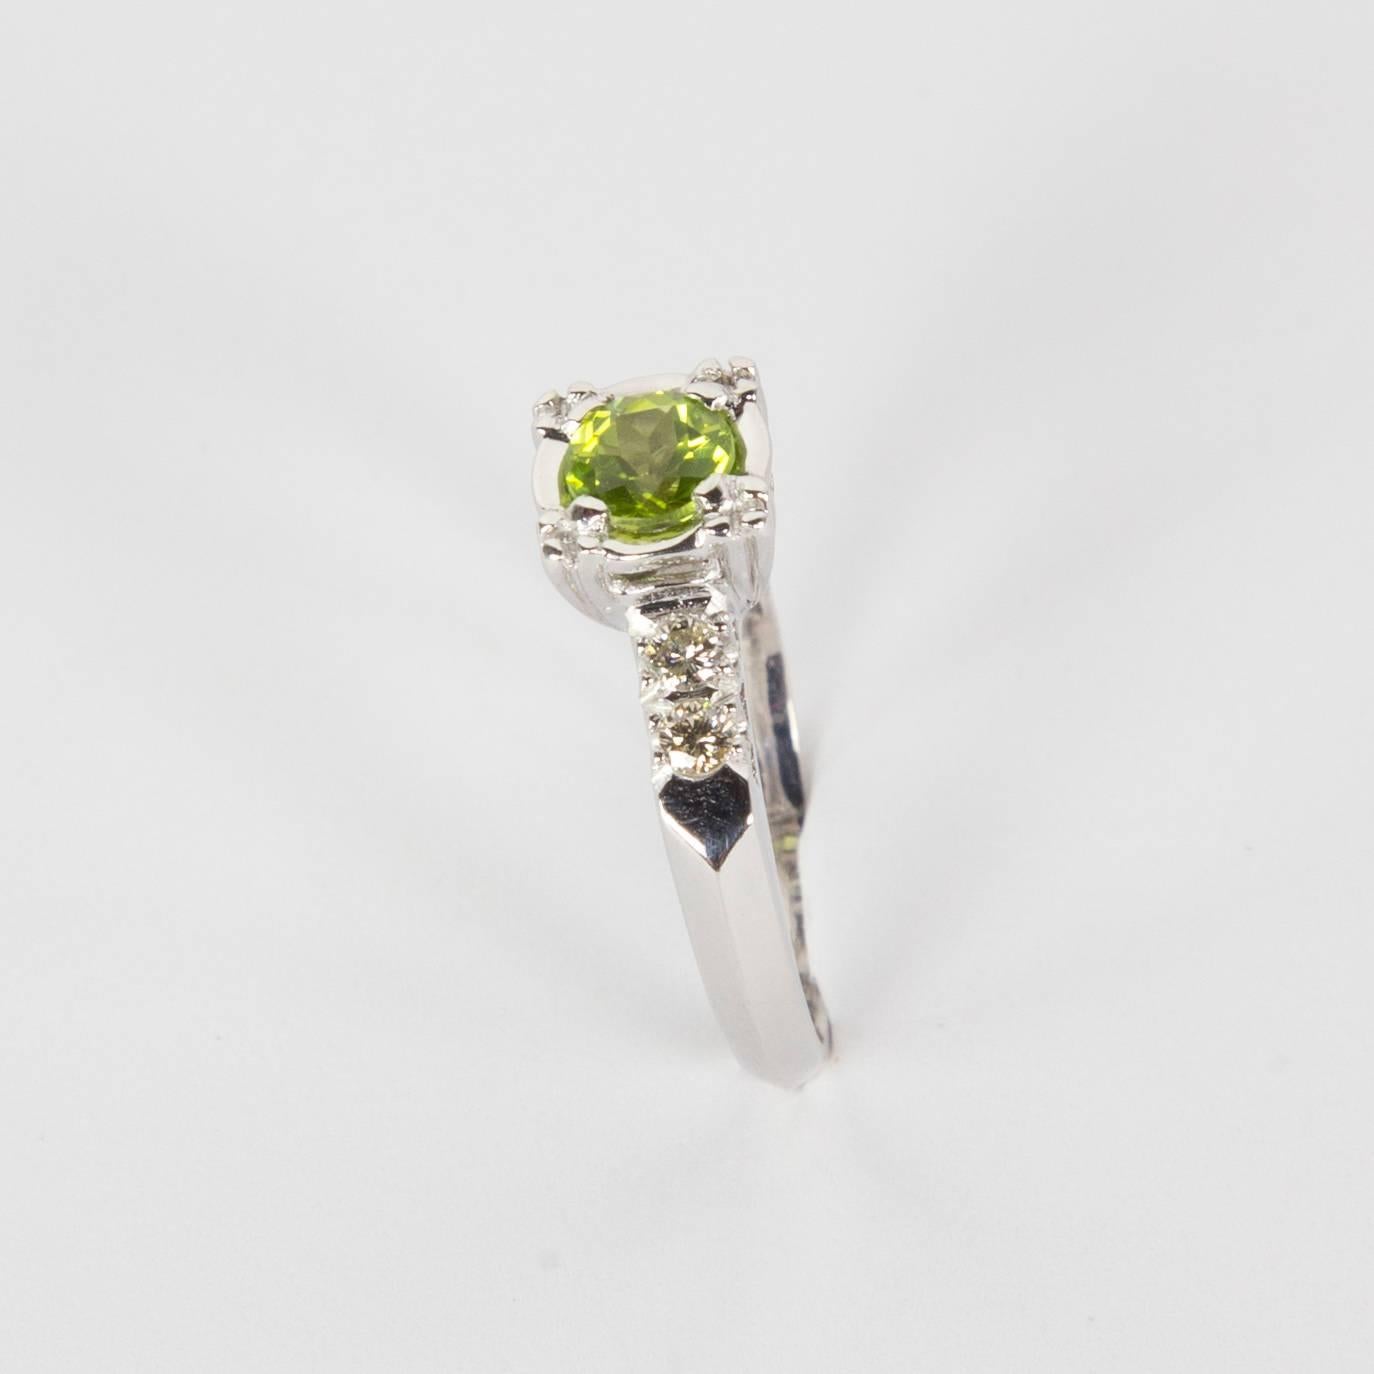 Belle bague de fiançailles solitaire centrée sur une tourmaline verte d'environ 0,45 carat, rehaussée de deux diamants sur chaque épaule de la monture en platine. Taille de l'anneau : 5,5 ; possibilité de redimensionnement gratuit de l'anneau. Une